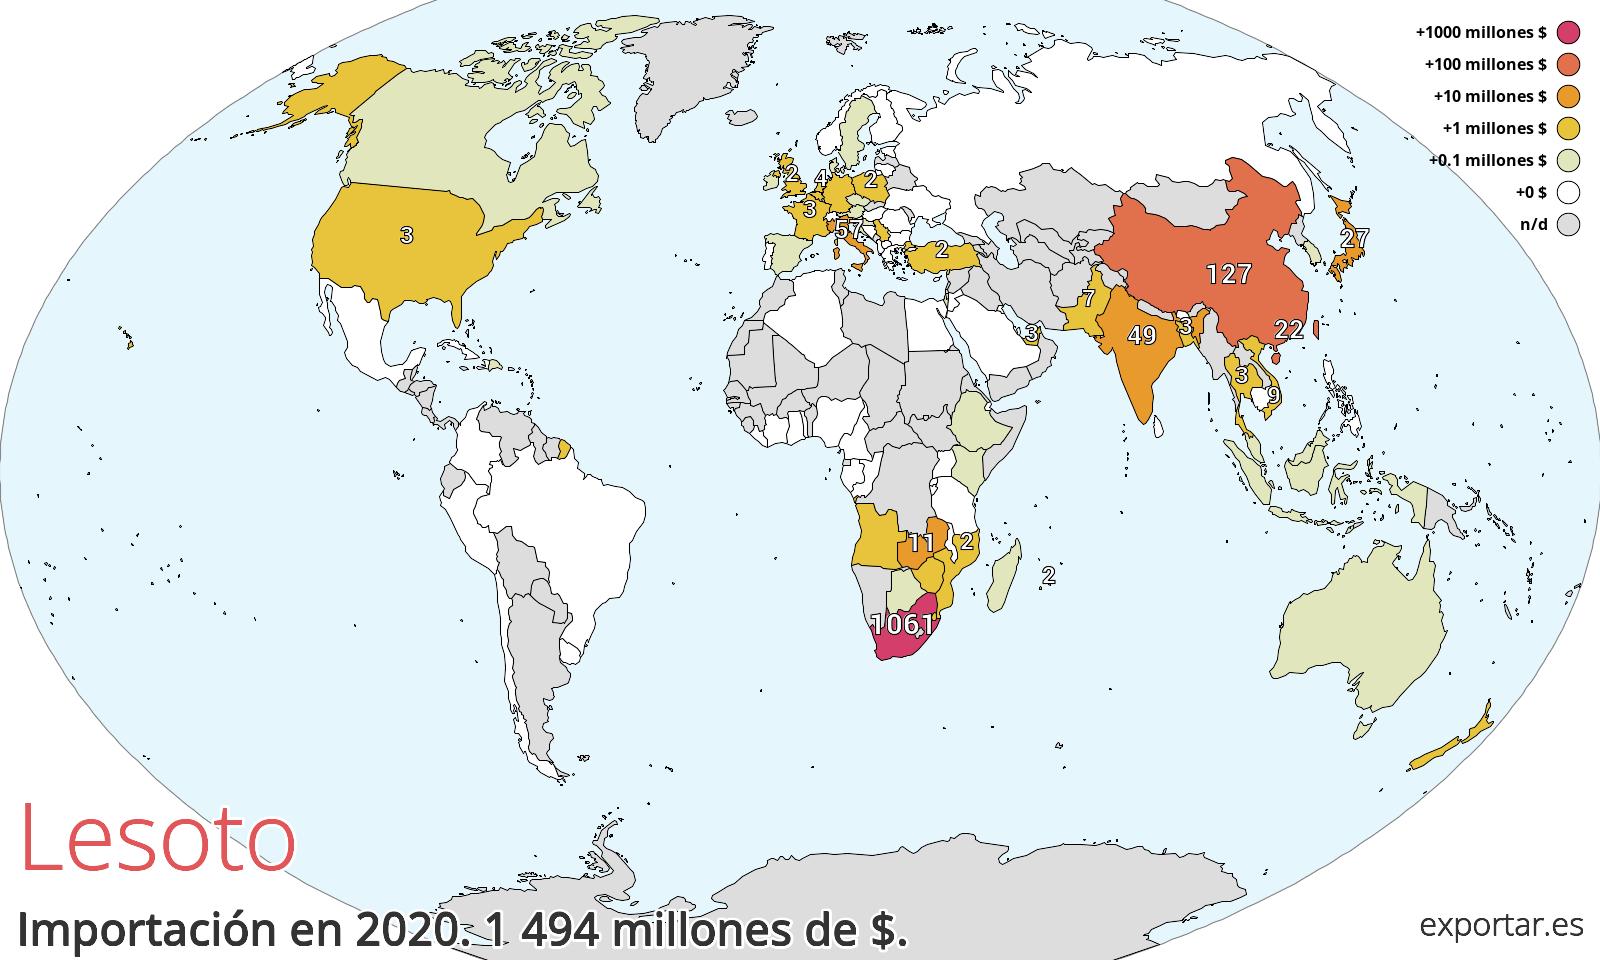 Mapa de importación de Lesoto en 2020.